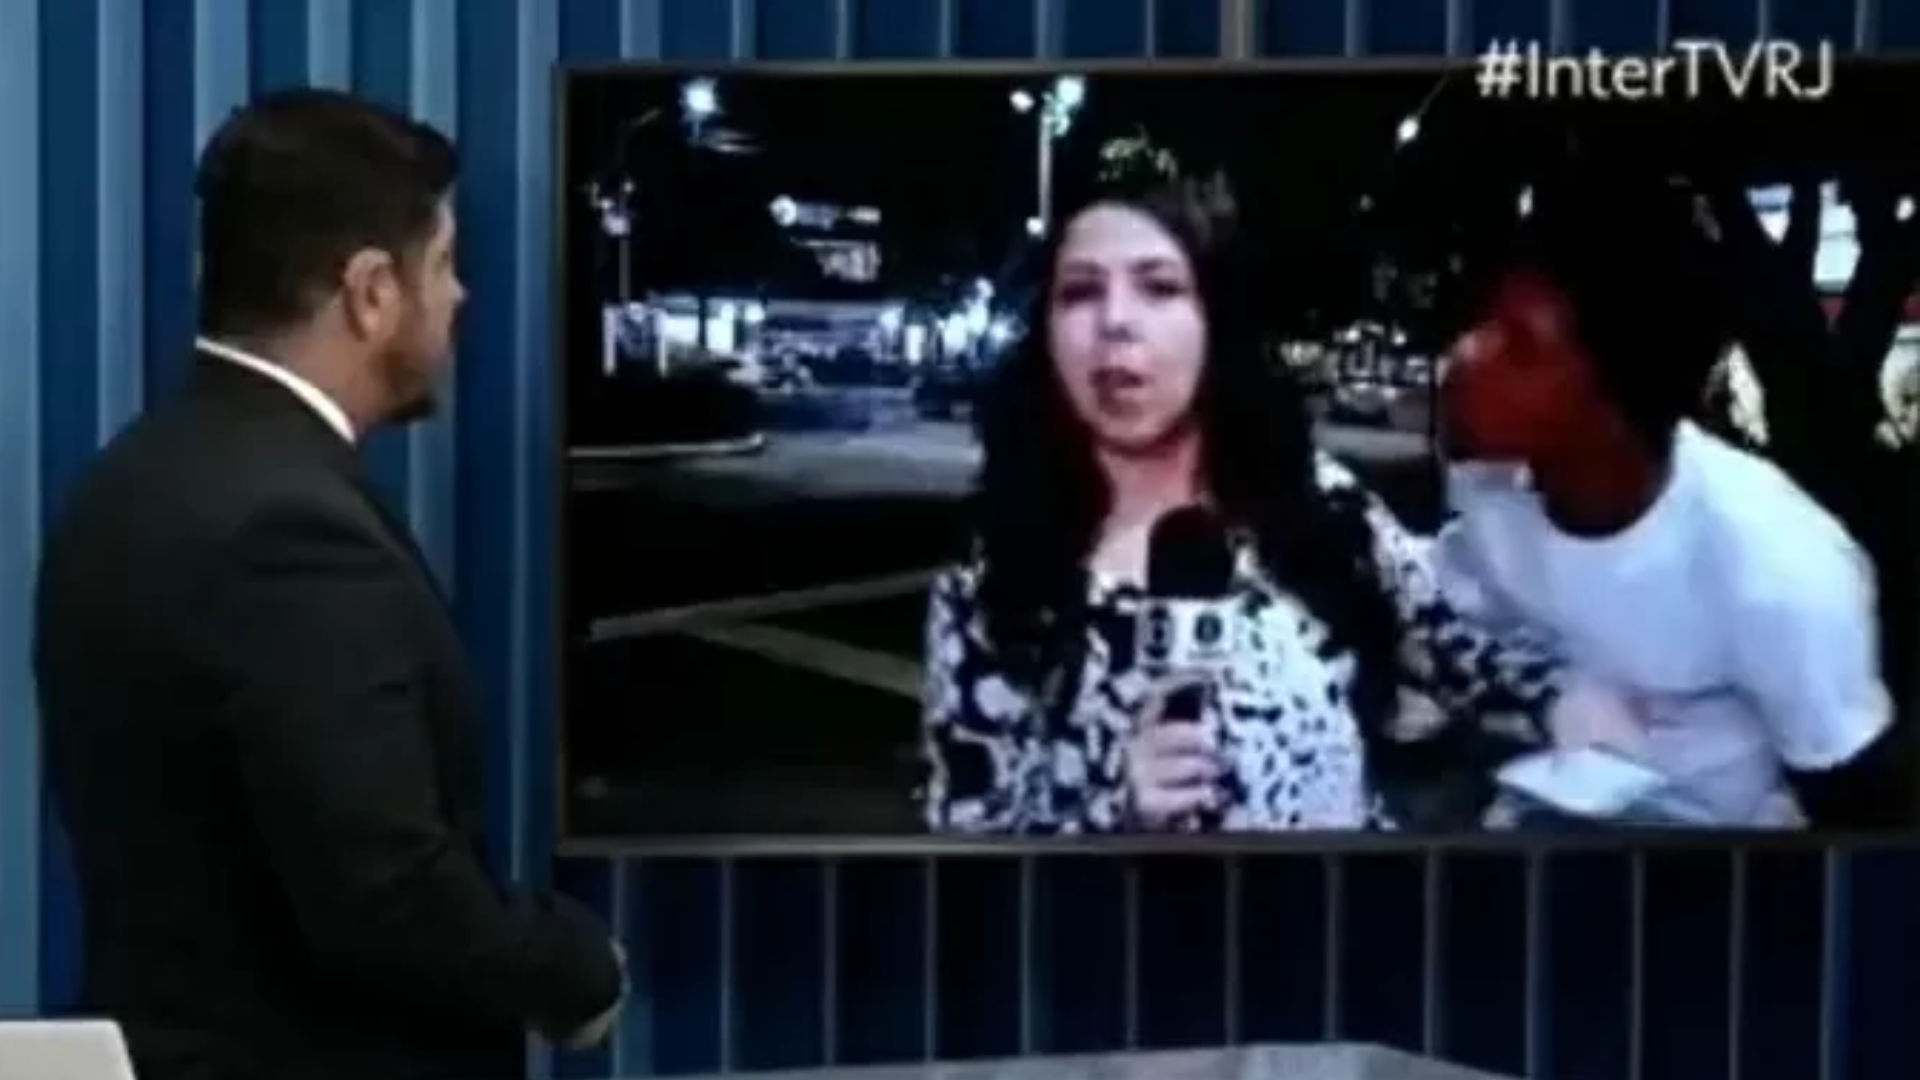 Vídeo: Homem invade transmissão ao vivo, tenta beijar repórter da Globo, e jornalista desabafa: ‘Sensação horrível’